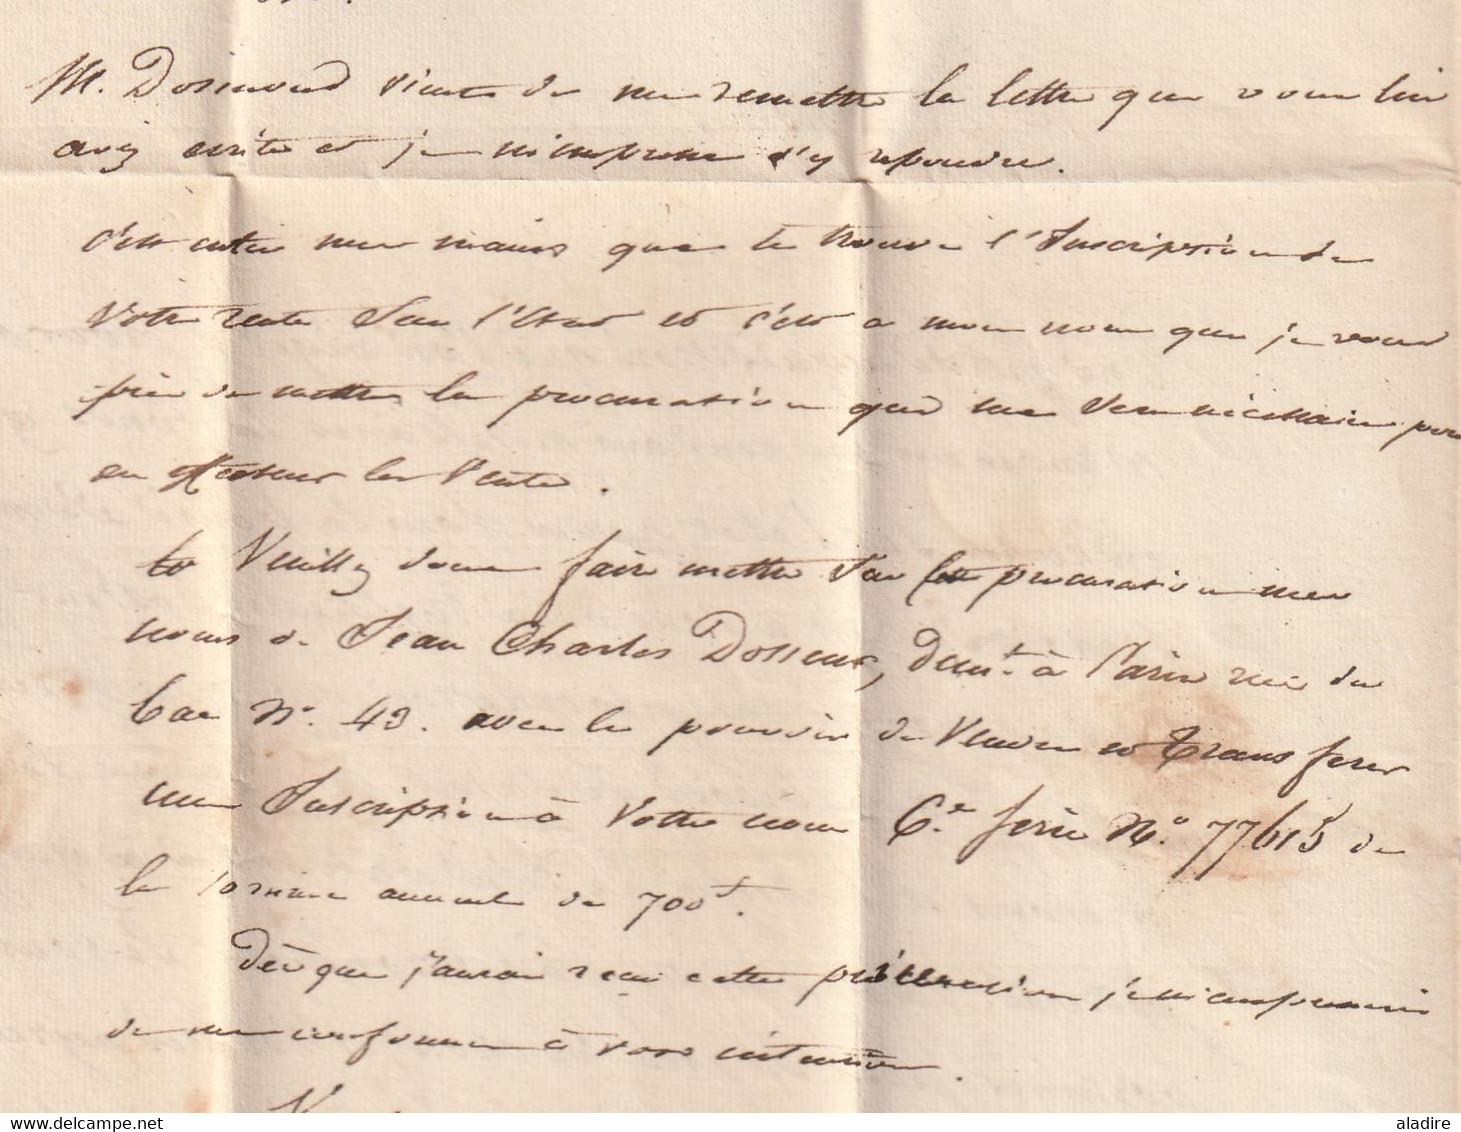 1831 - Lettre pliée avec correspondance en PORT PAYE - PP SOISSONS en rouge vers PARIS - dateur départ et arrivée